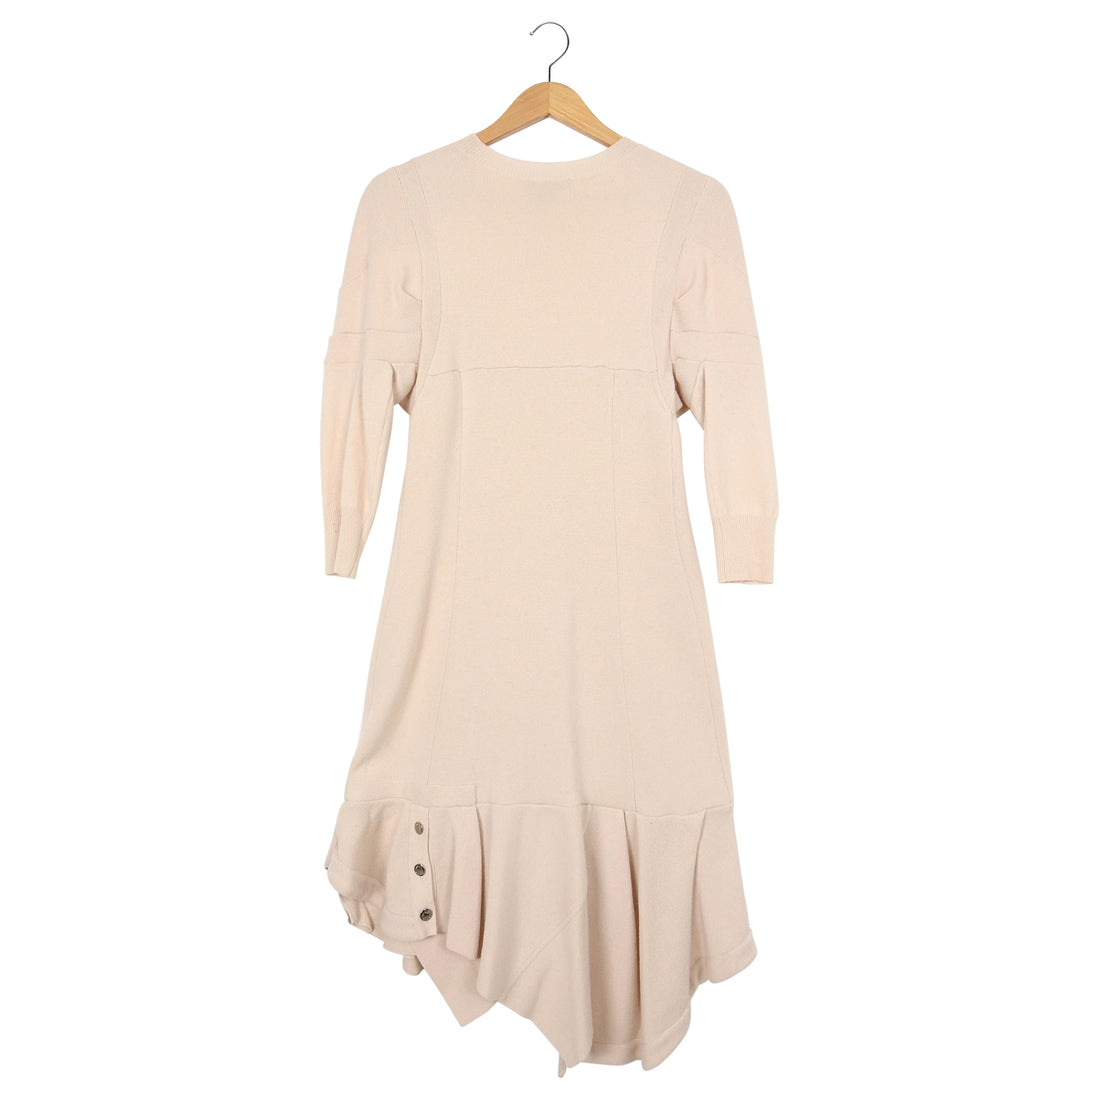 Louis Vuitton Ivory Knit Ruffle Sweater Dress – M (6/8)